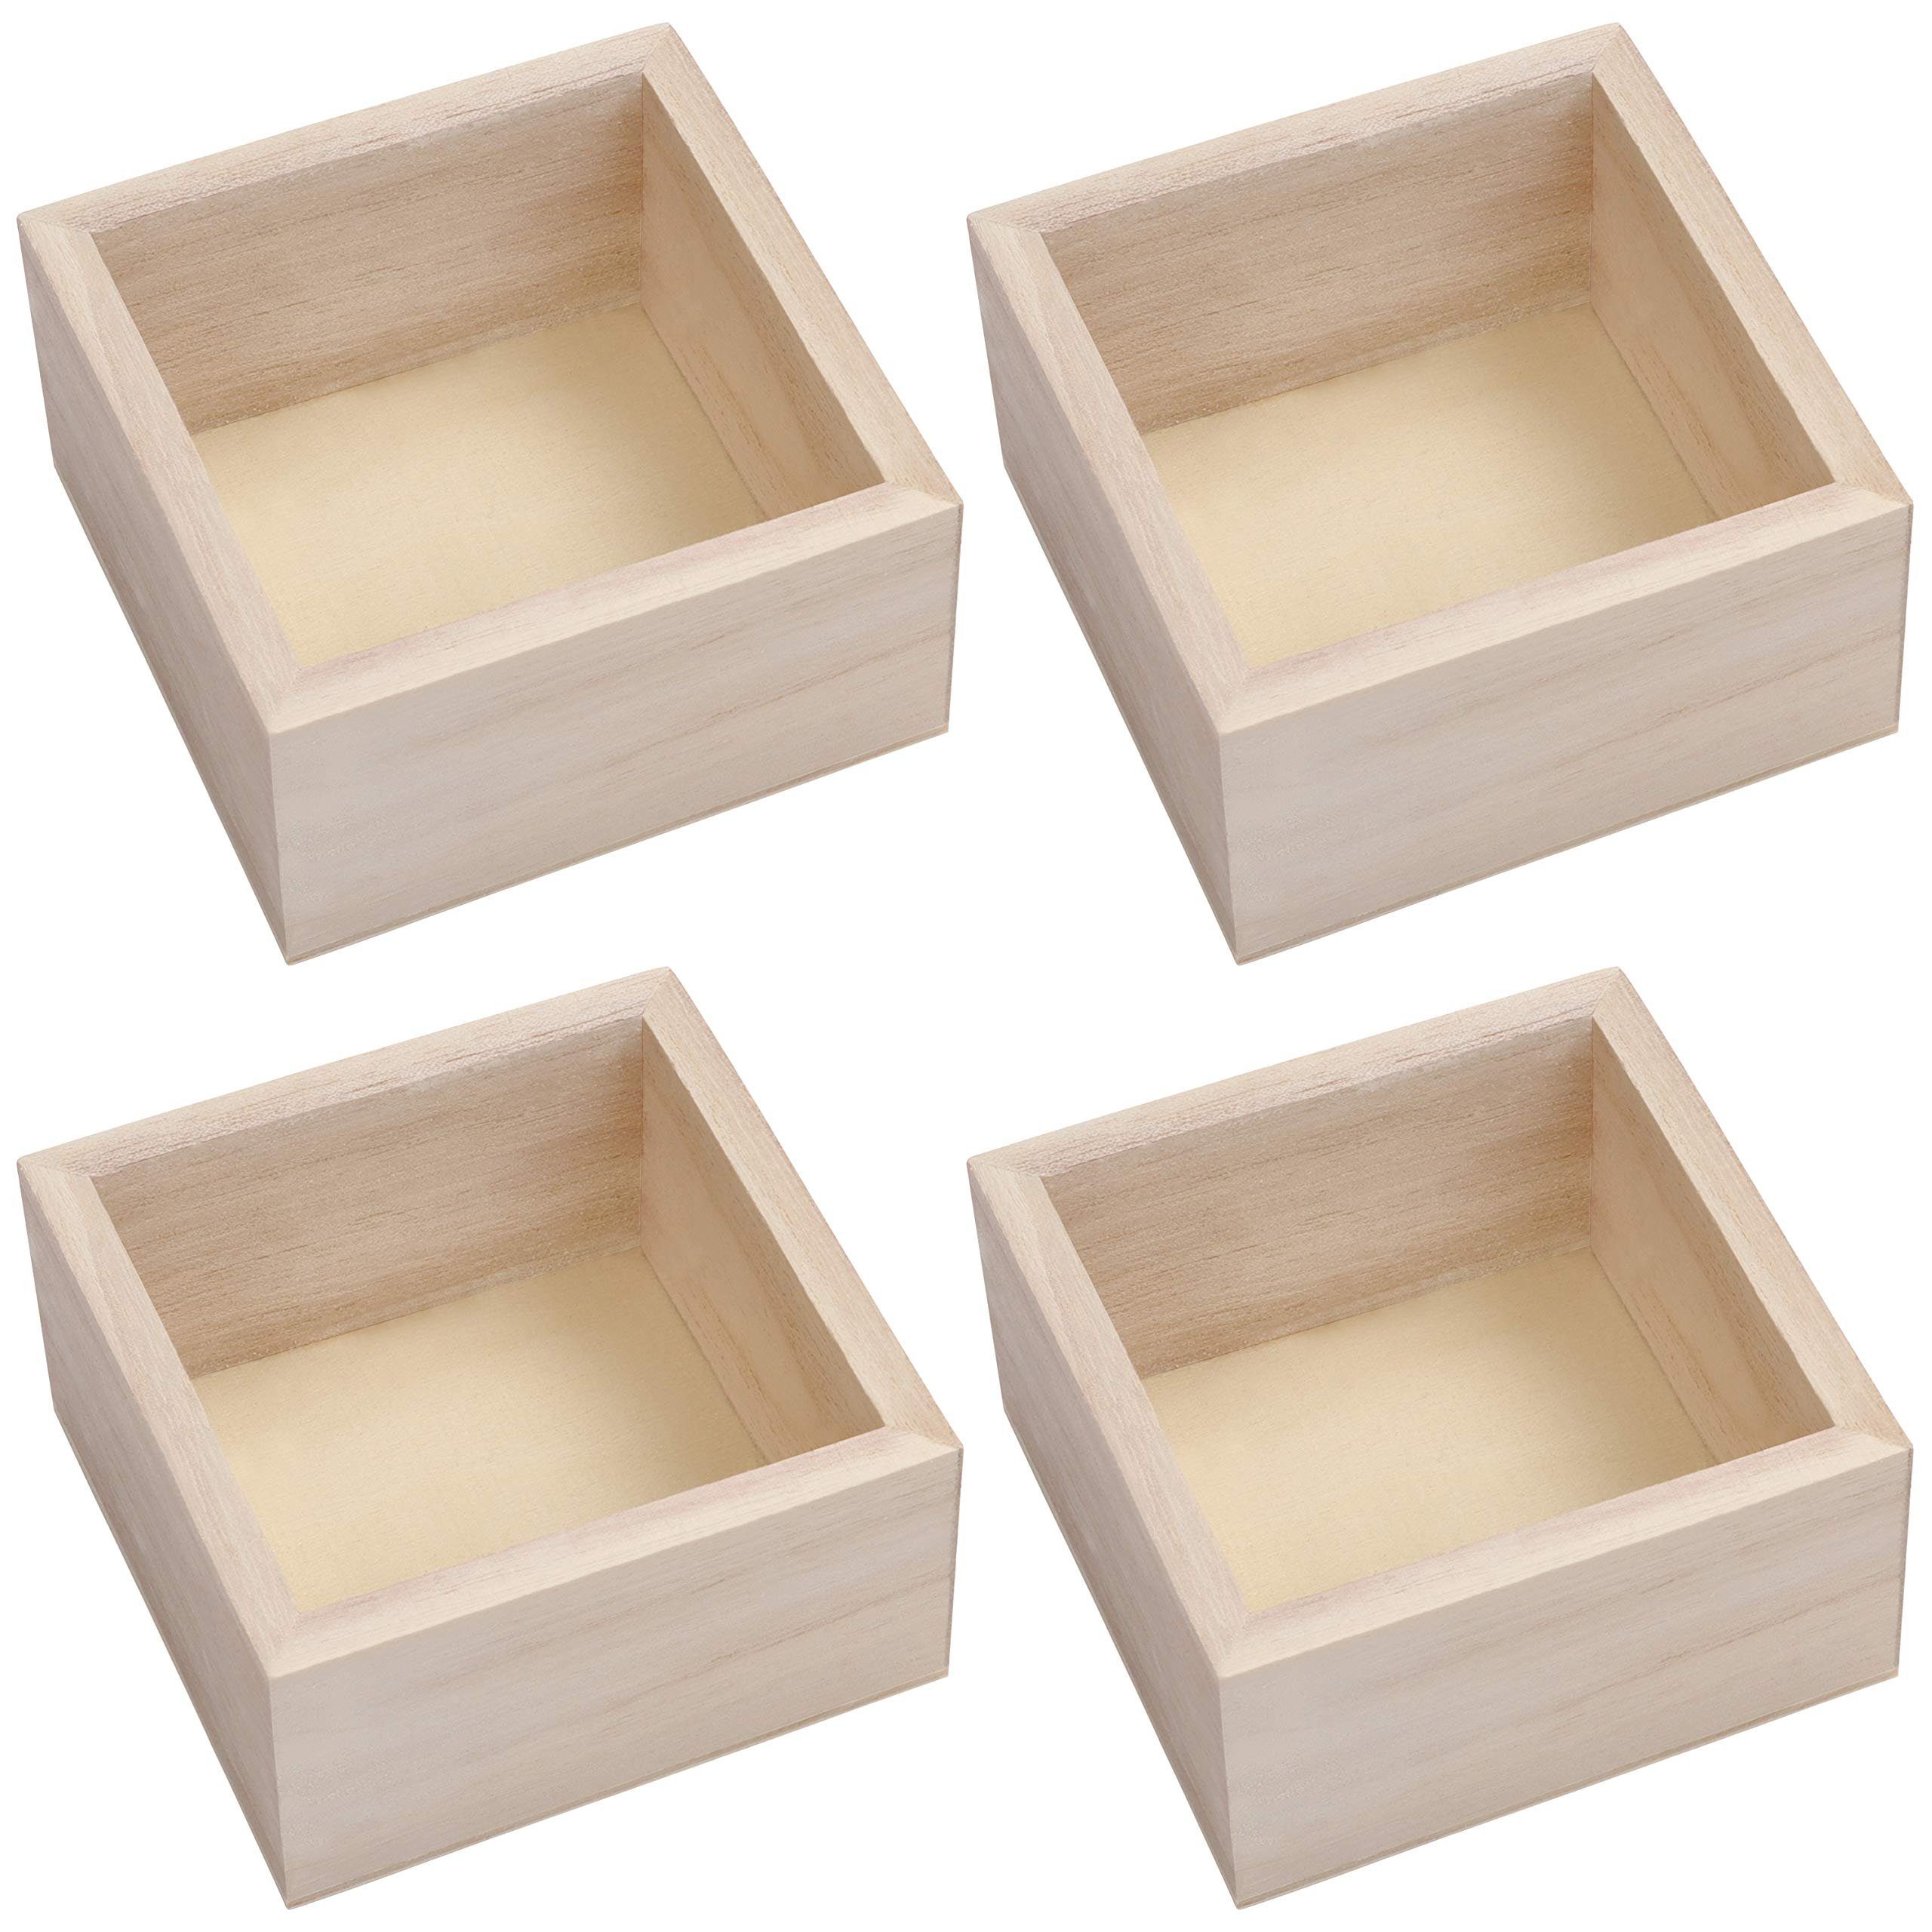 Belle Vous Streudeko Holzkiste Quadratisch 4 Stück 9,5x9,5x5cm, Square  Wooden Storage Box 4pcs 9.5x9.5x5cm